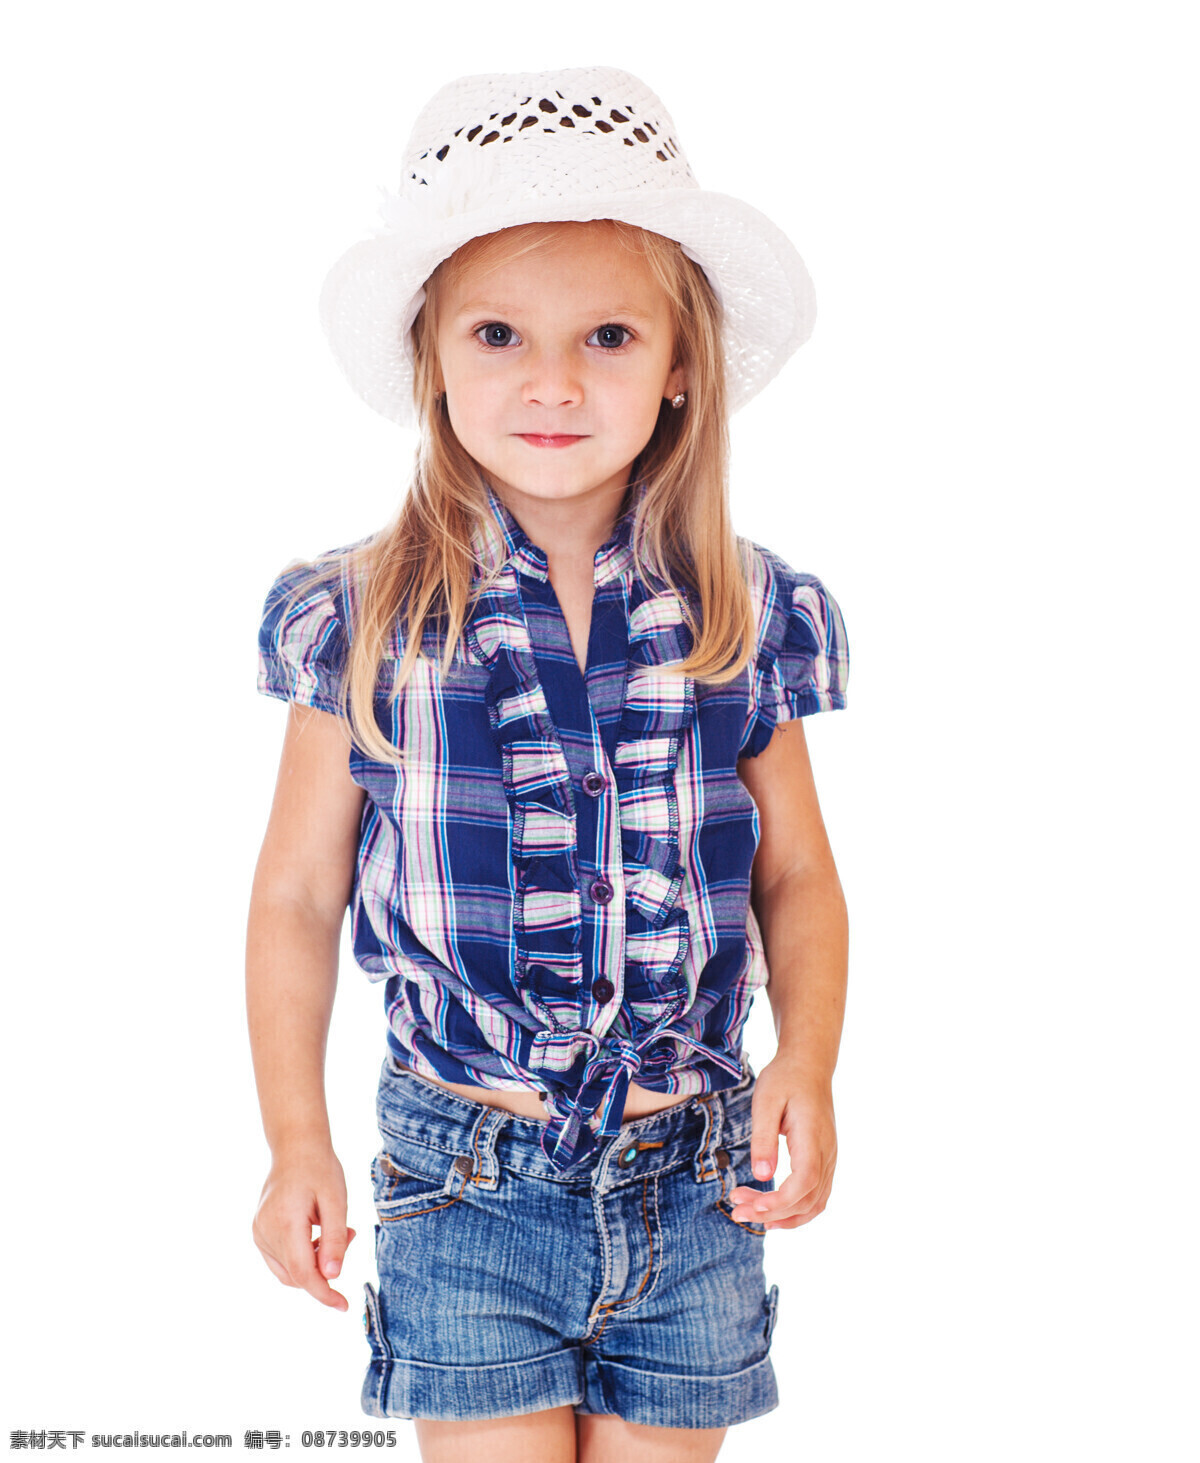 戴 着凉 帽 外国 小女孩 外国小女孩 凉帽 戴帽子 人物摄影 儿童图片 人物图片